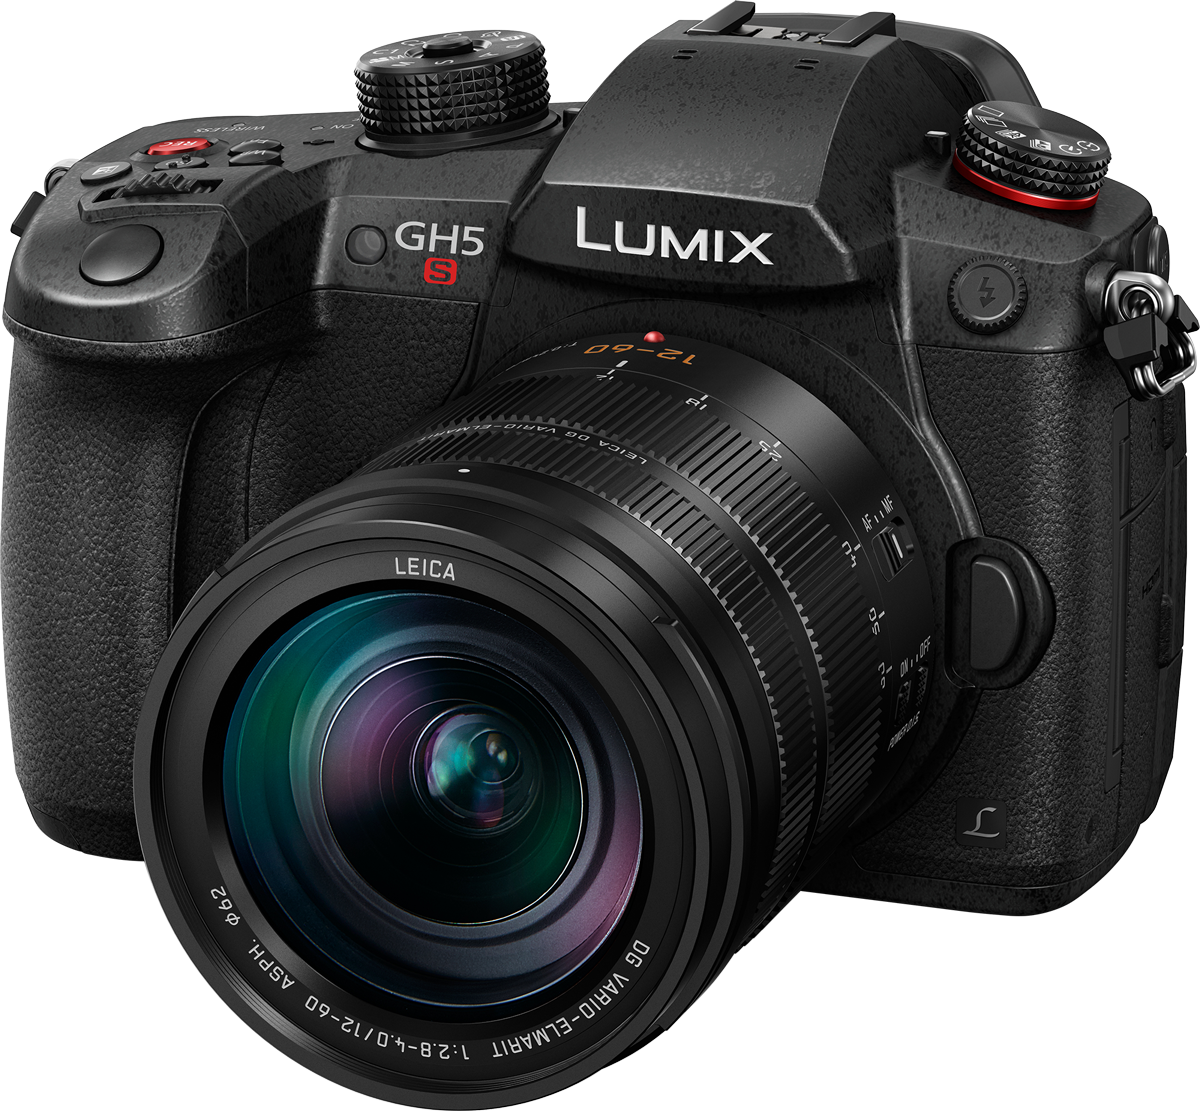 Lumix-GH5S